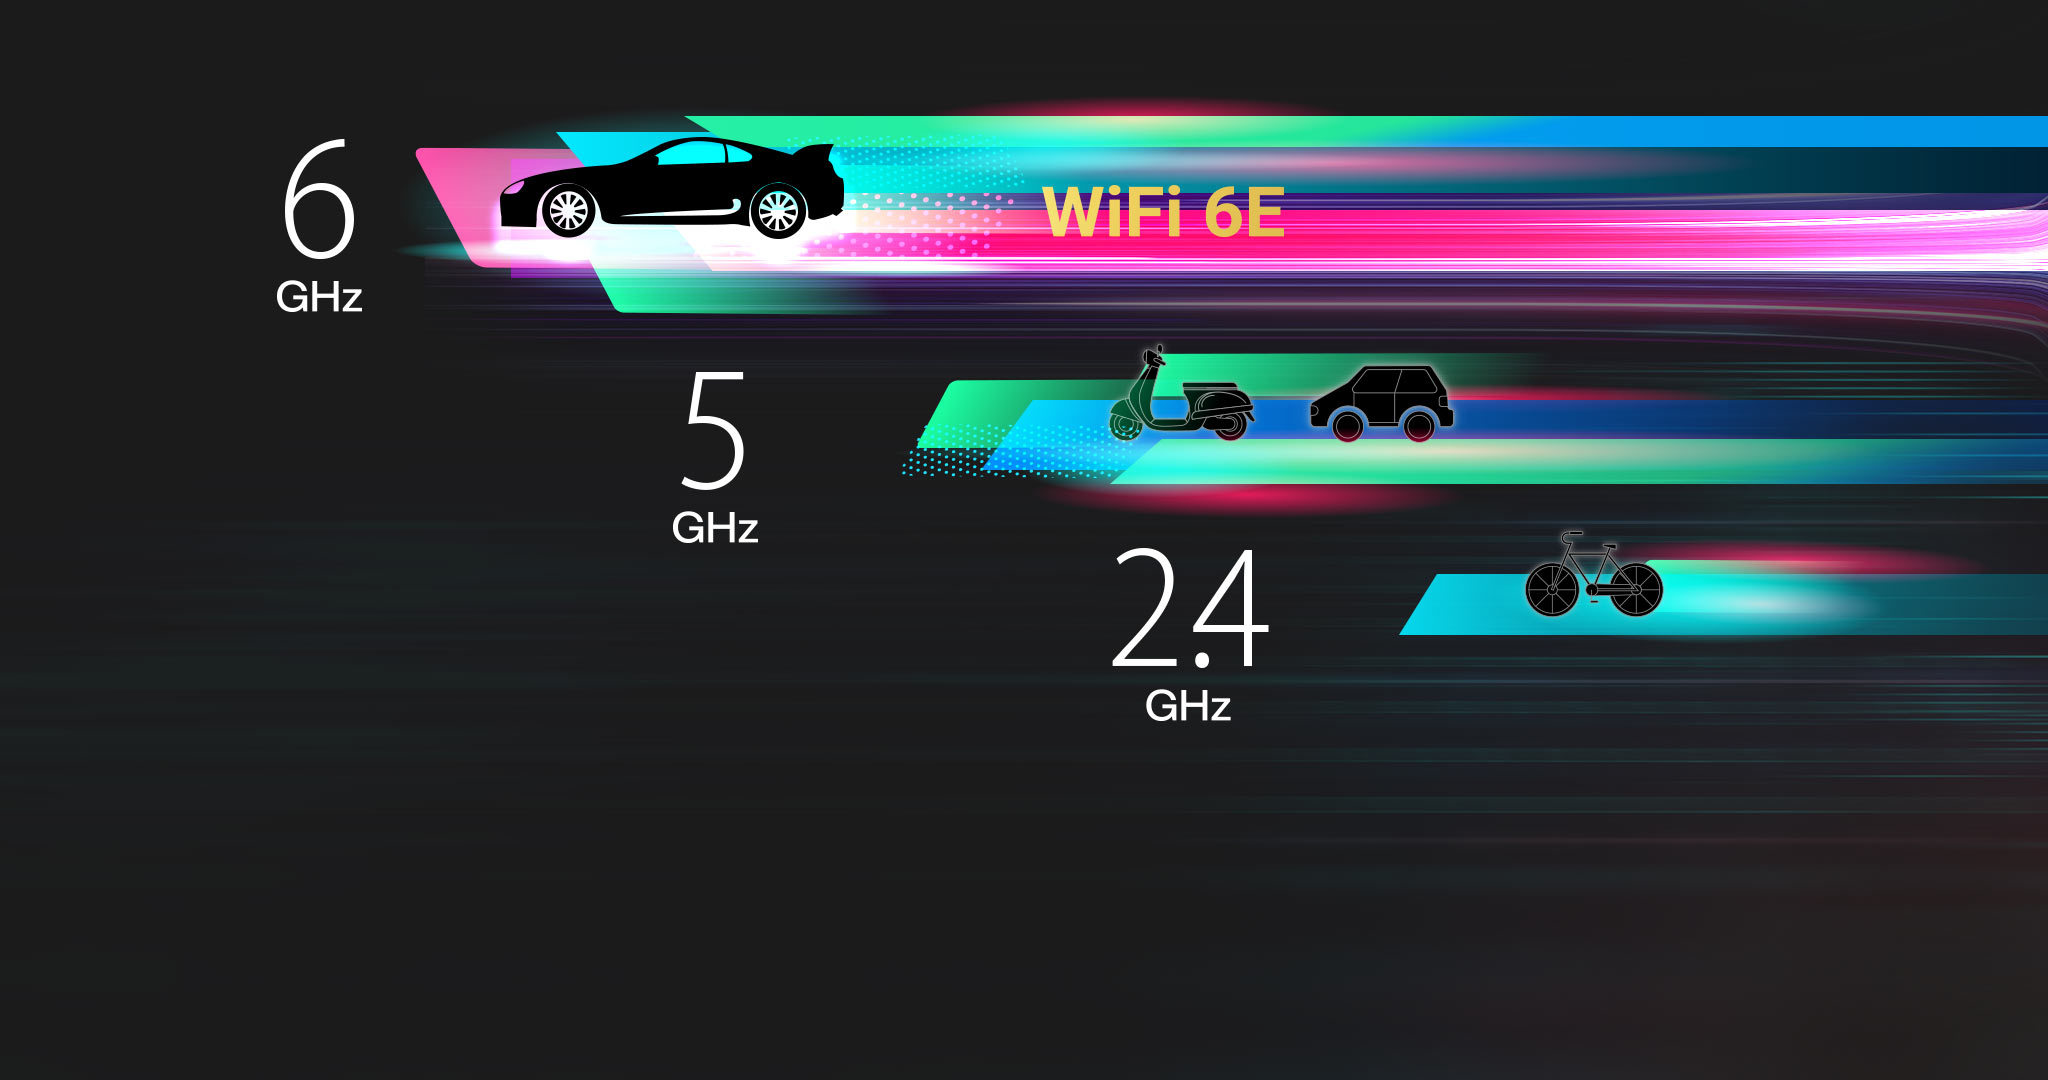 A banda de 6GHz é dedicada aos dispositivos WiFi 6E, proporcionando mais canais de 160MHz.